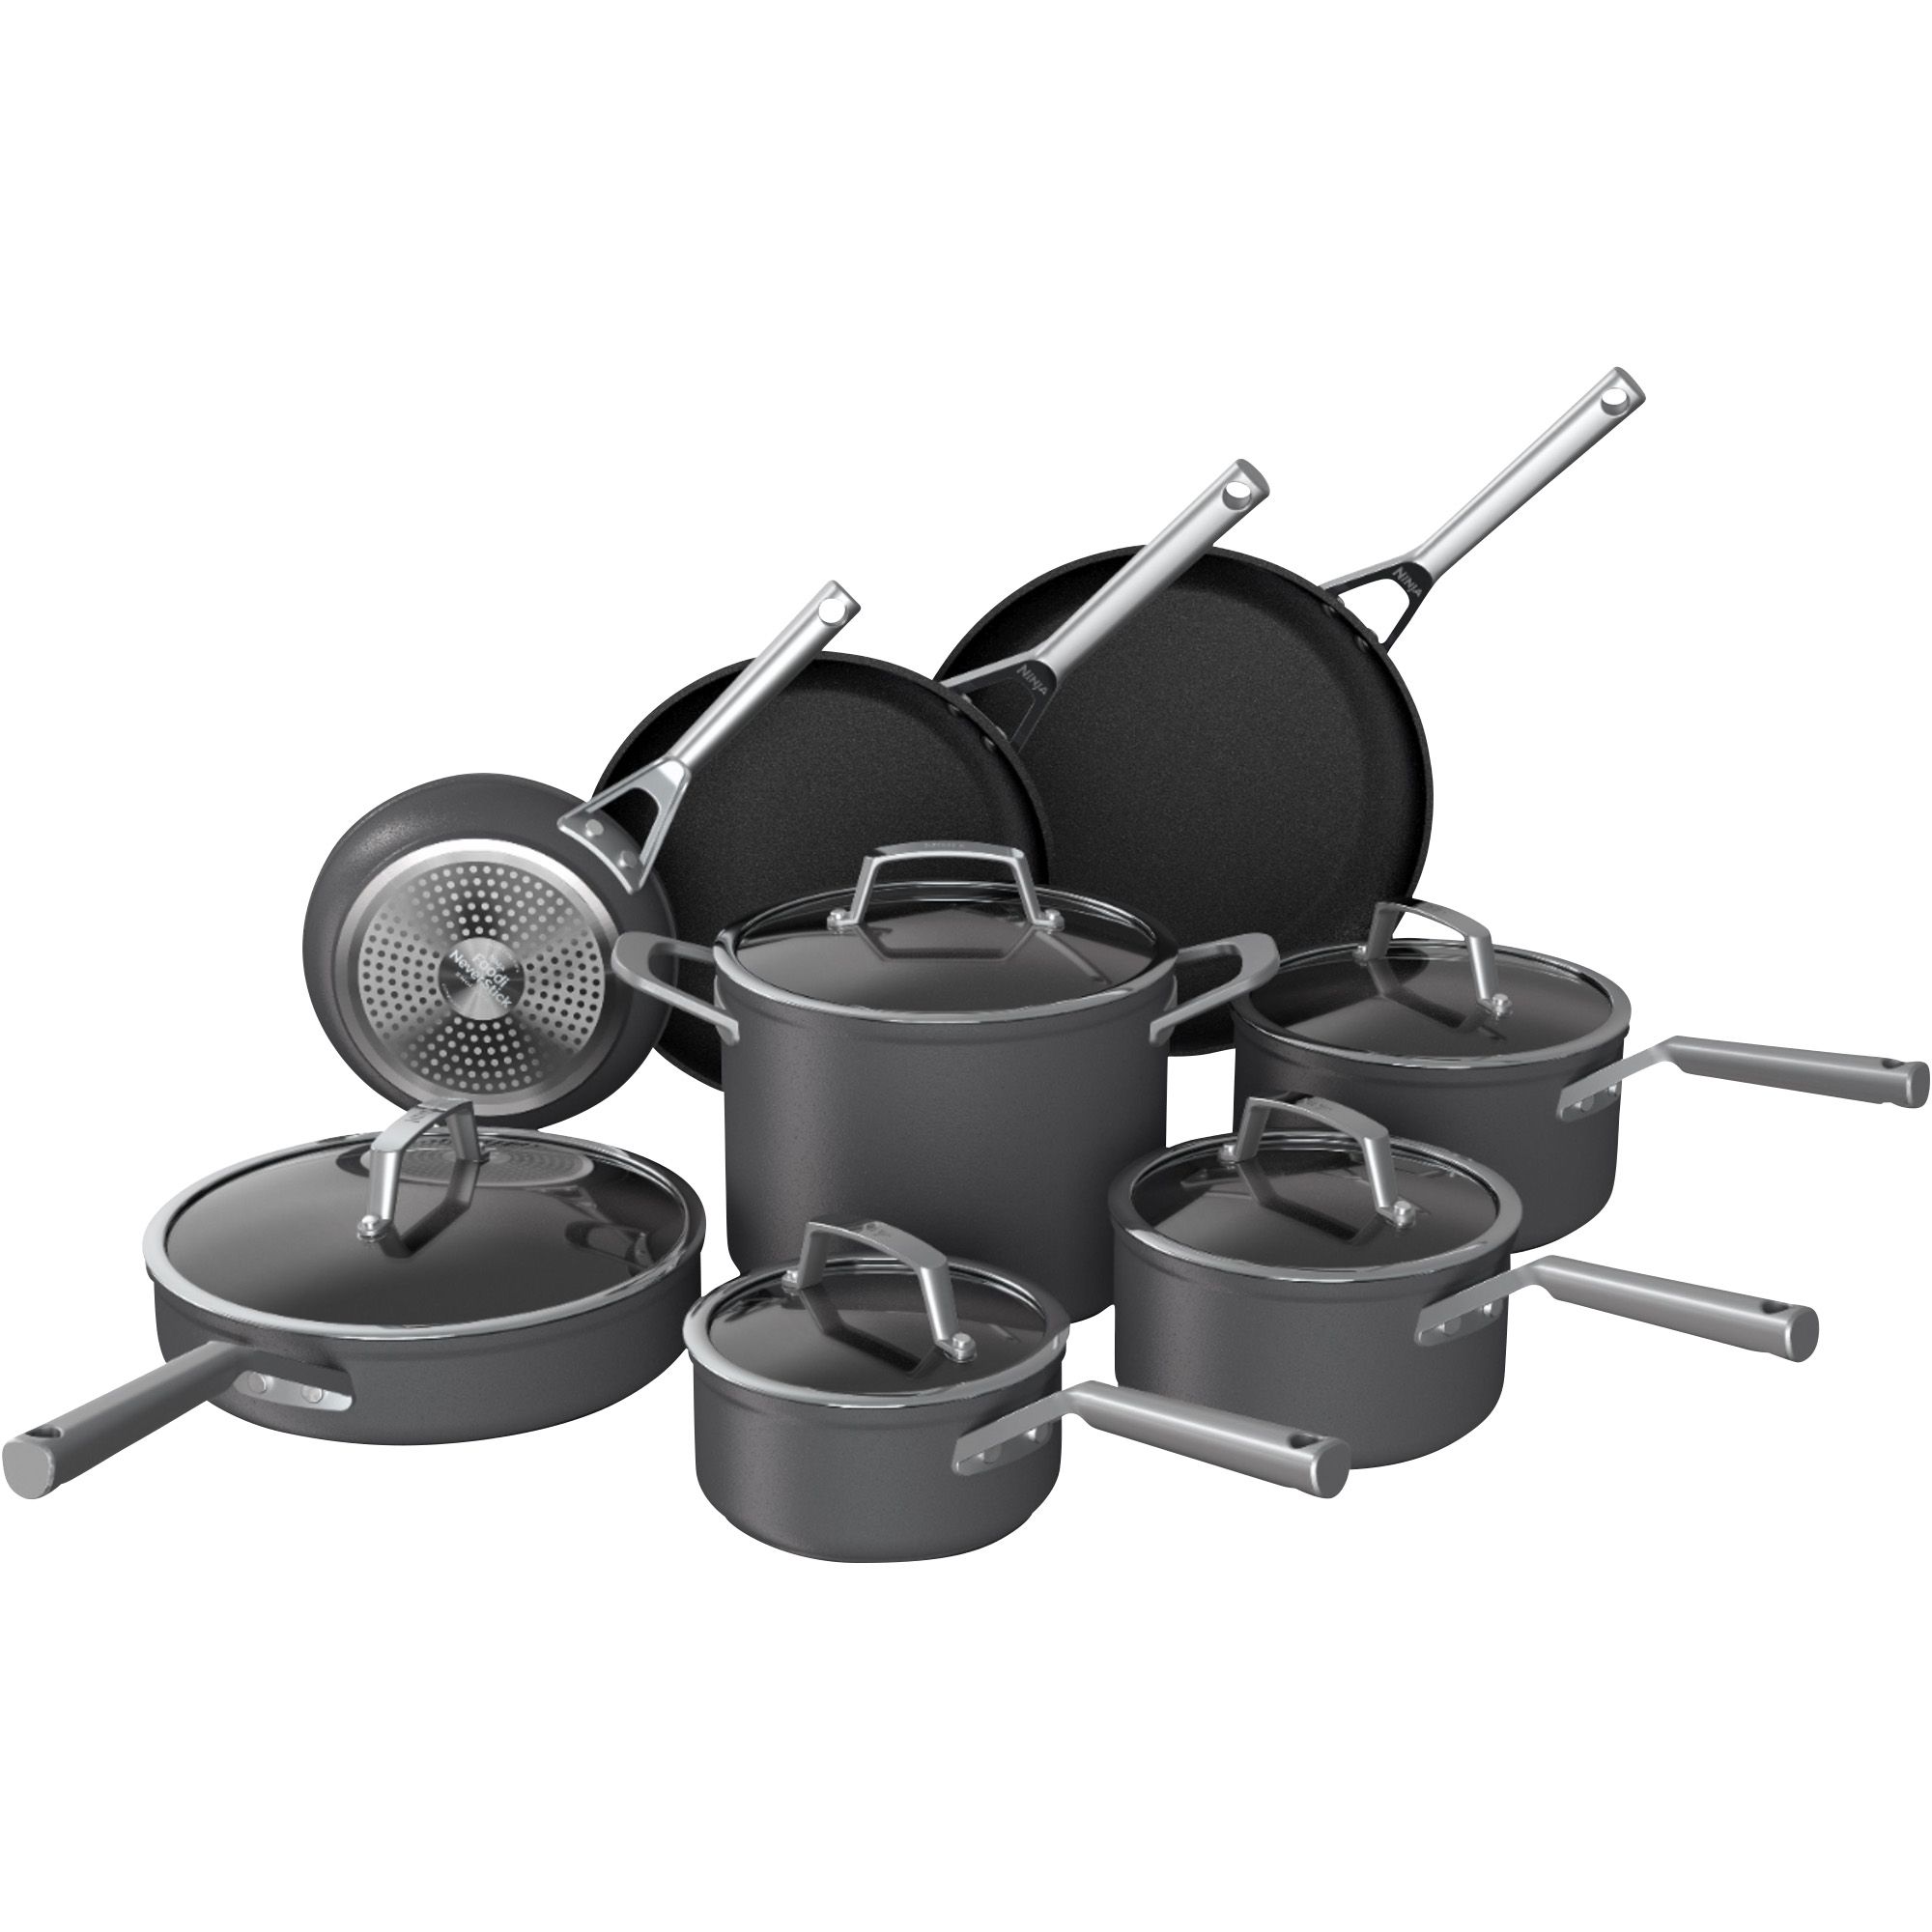 Fingerhut - Rachael Ray 10-Pc. Nonstick Hard-Anodized Aluminum Cookware Set